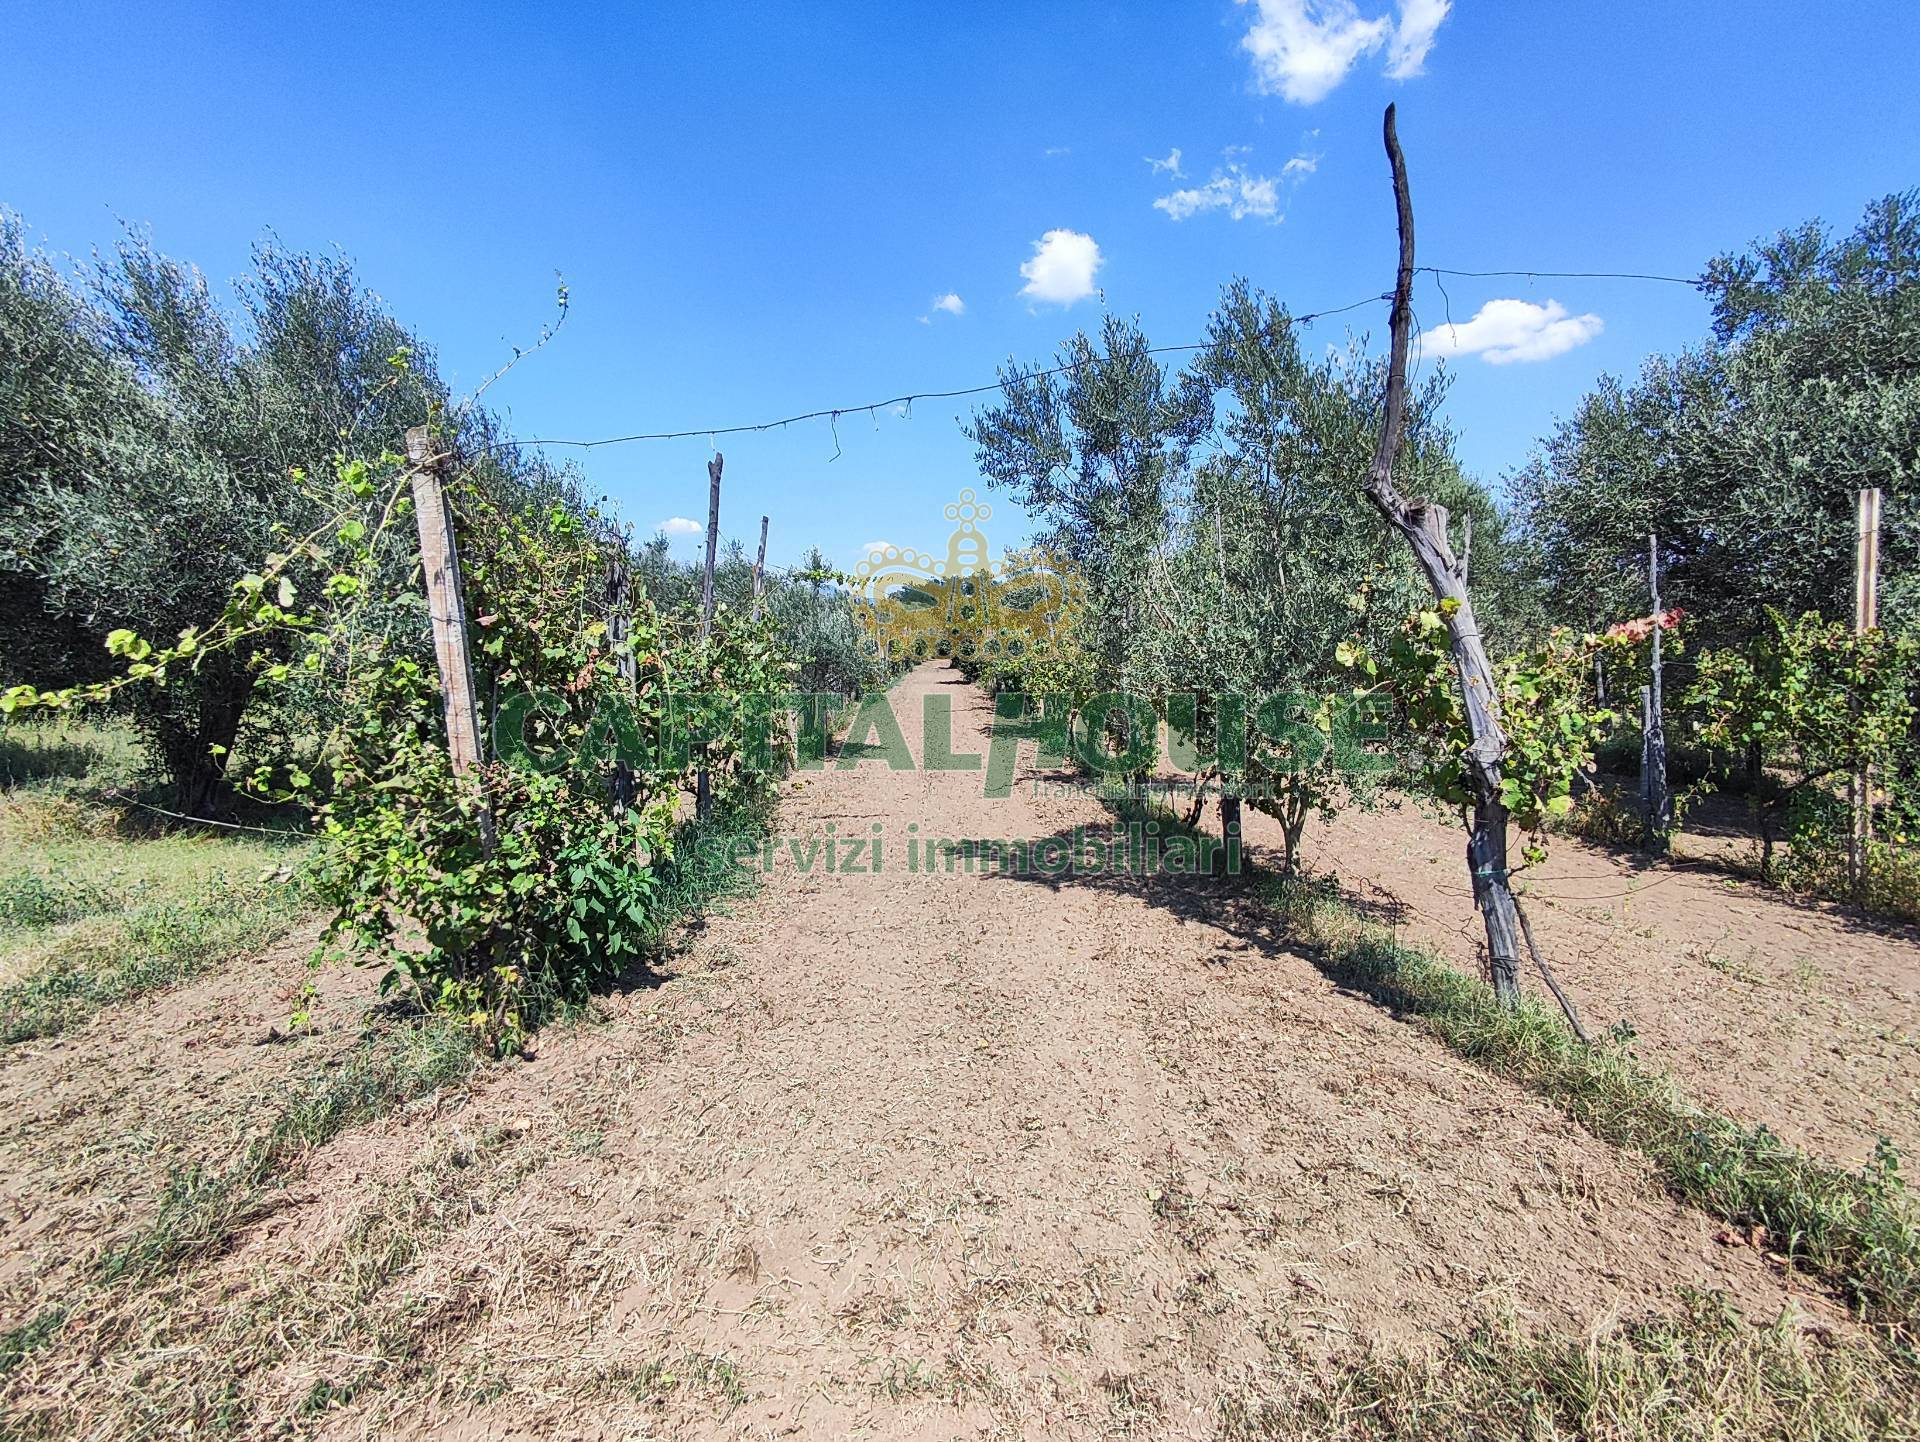 Terreno Agricolo in vendita a Capua, 9999 locali, zona Località: S.AngeloinFormis, prezzo € 28.000 | PortaleAgenzieImmobiliari.it